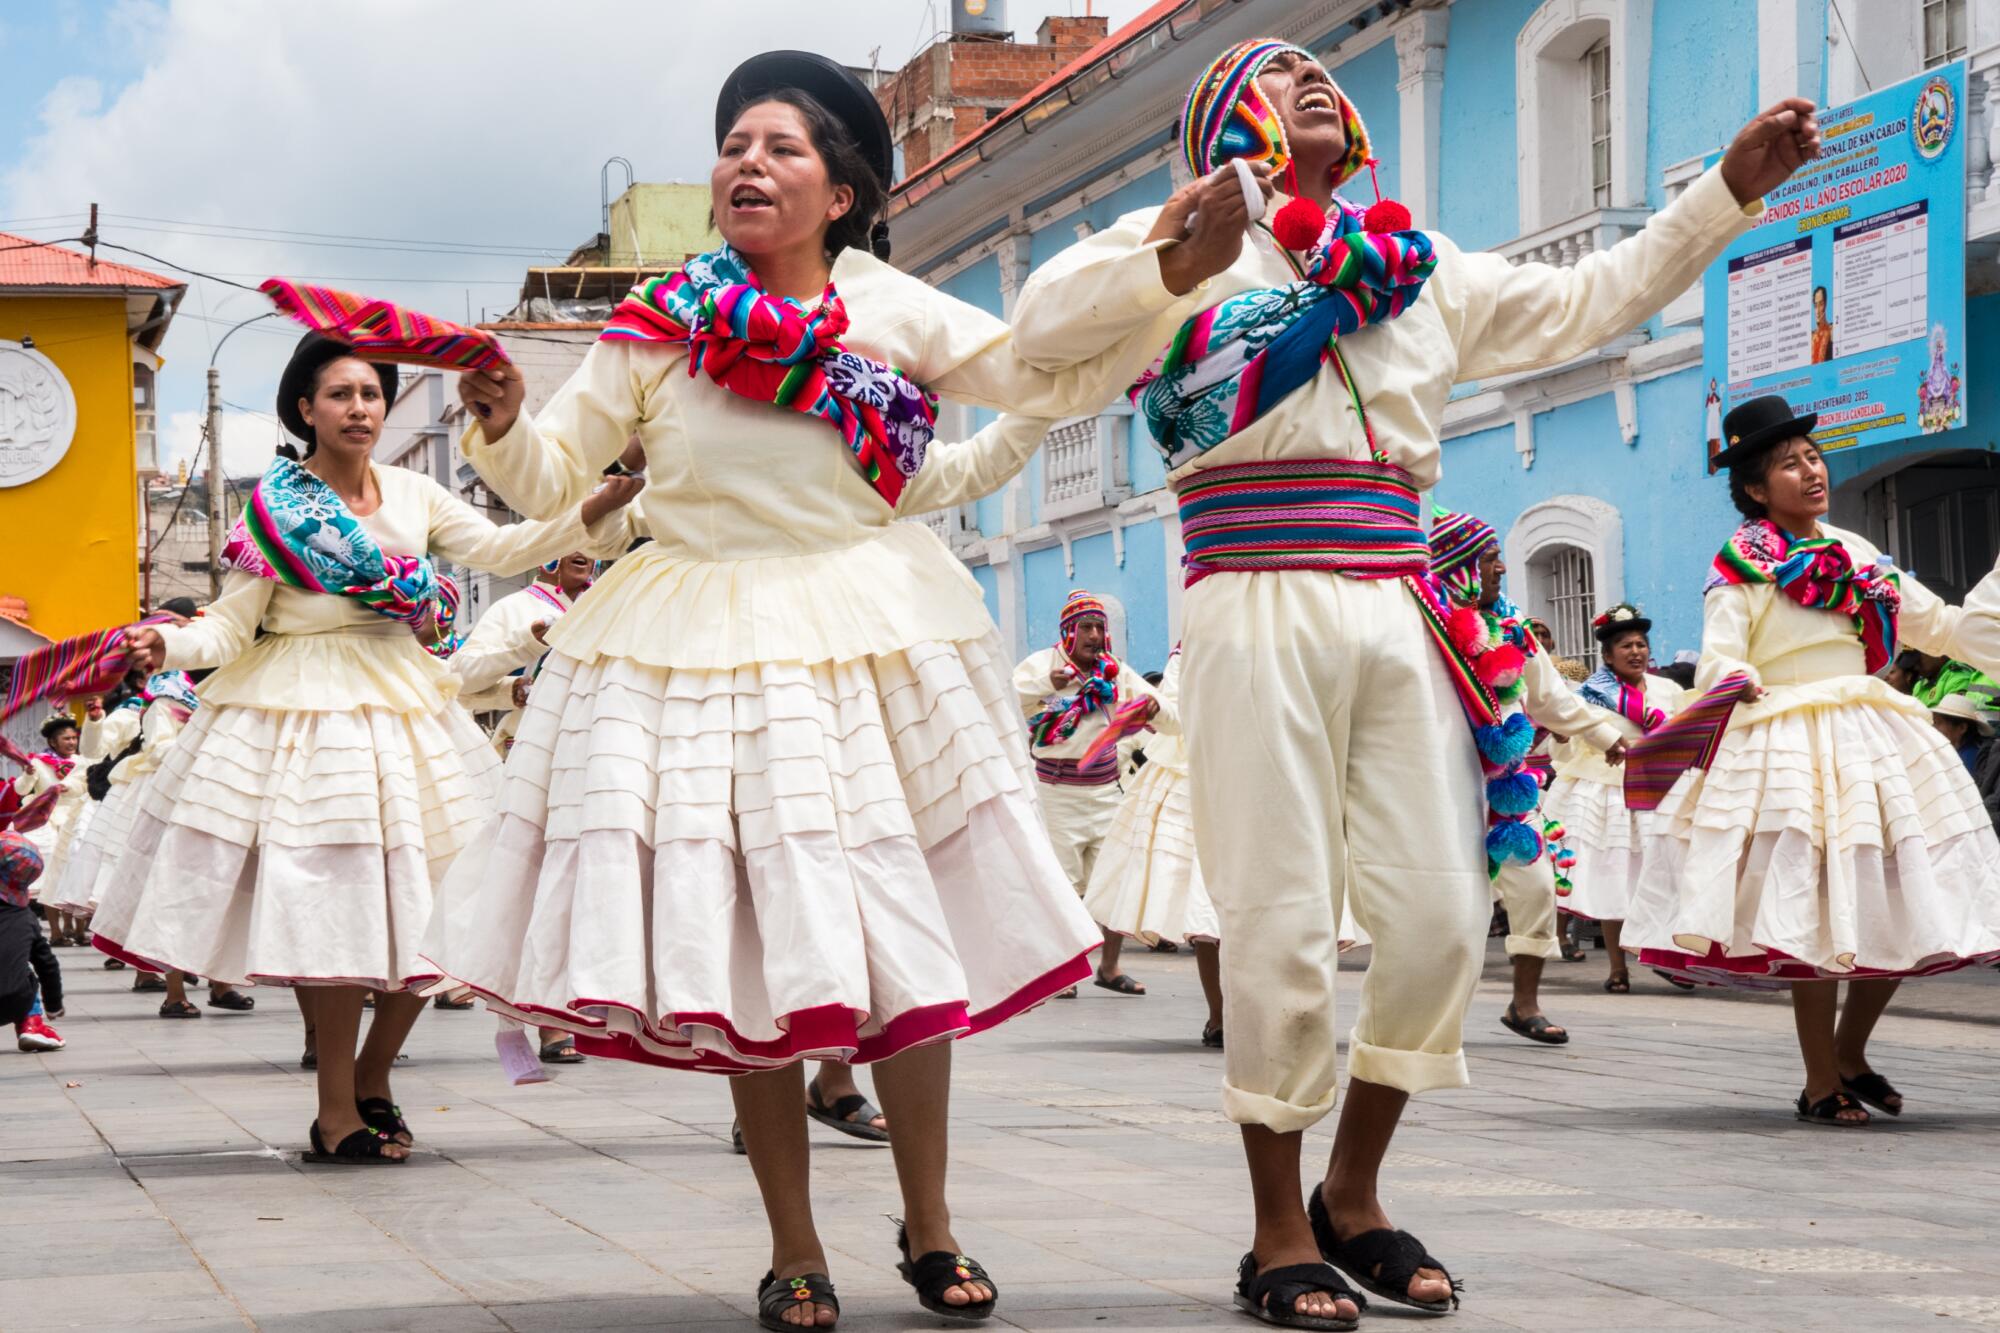 El colorido de la cultura peruana brilla en el marco de la independencia patria que cumple 200 años.